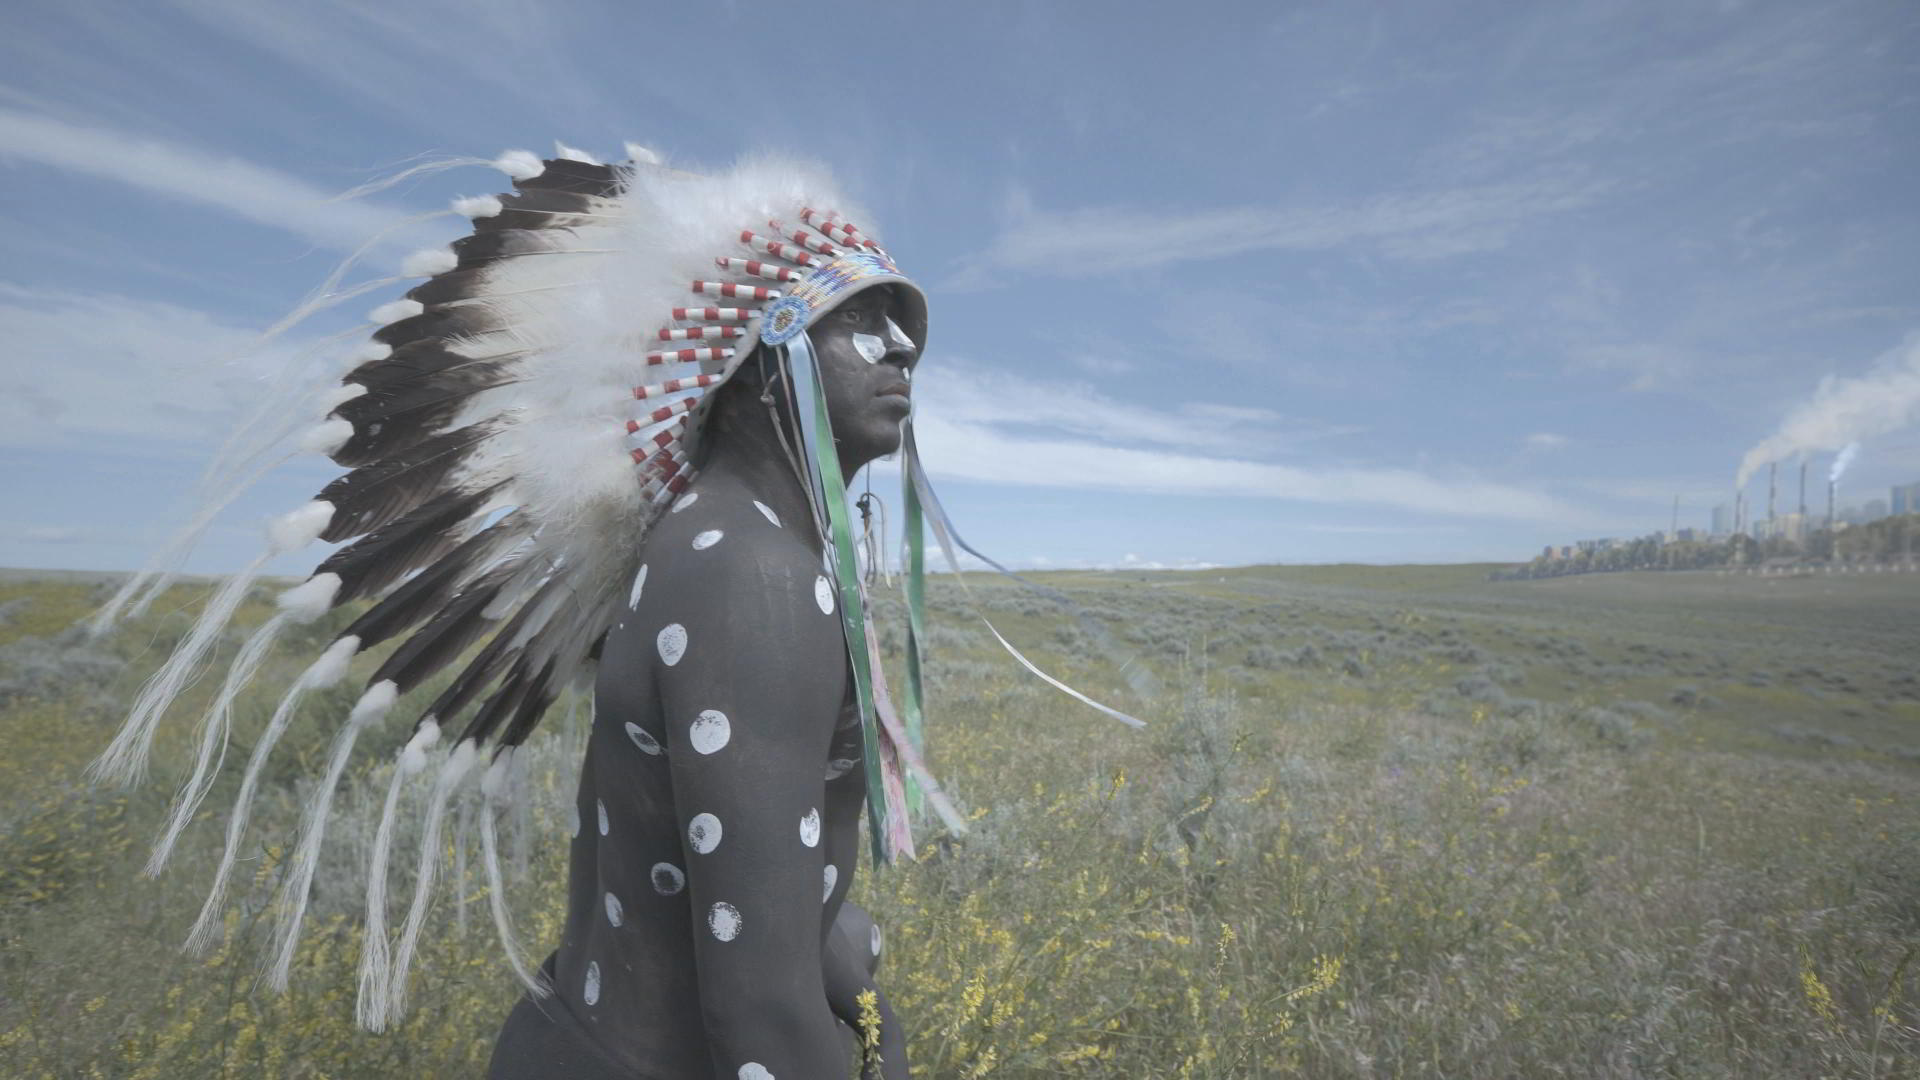 No Festival de Toronto, filmes buscam ressignificar figura do indígena